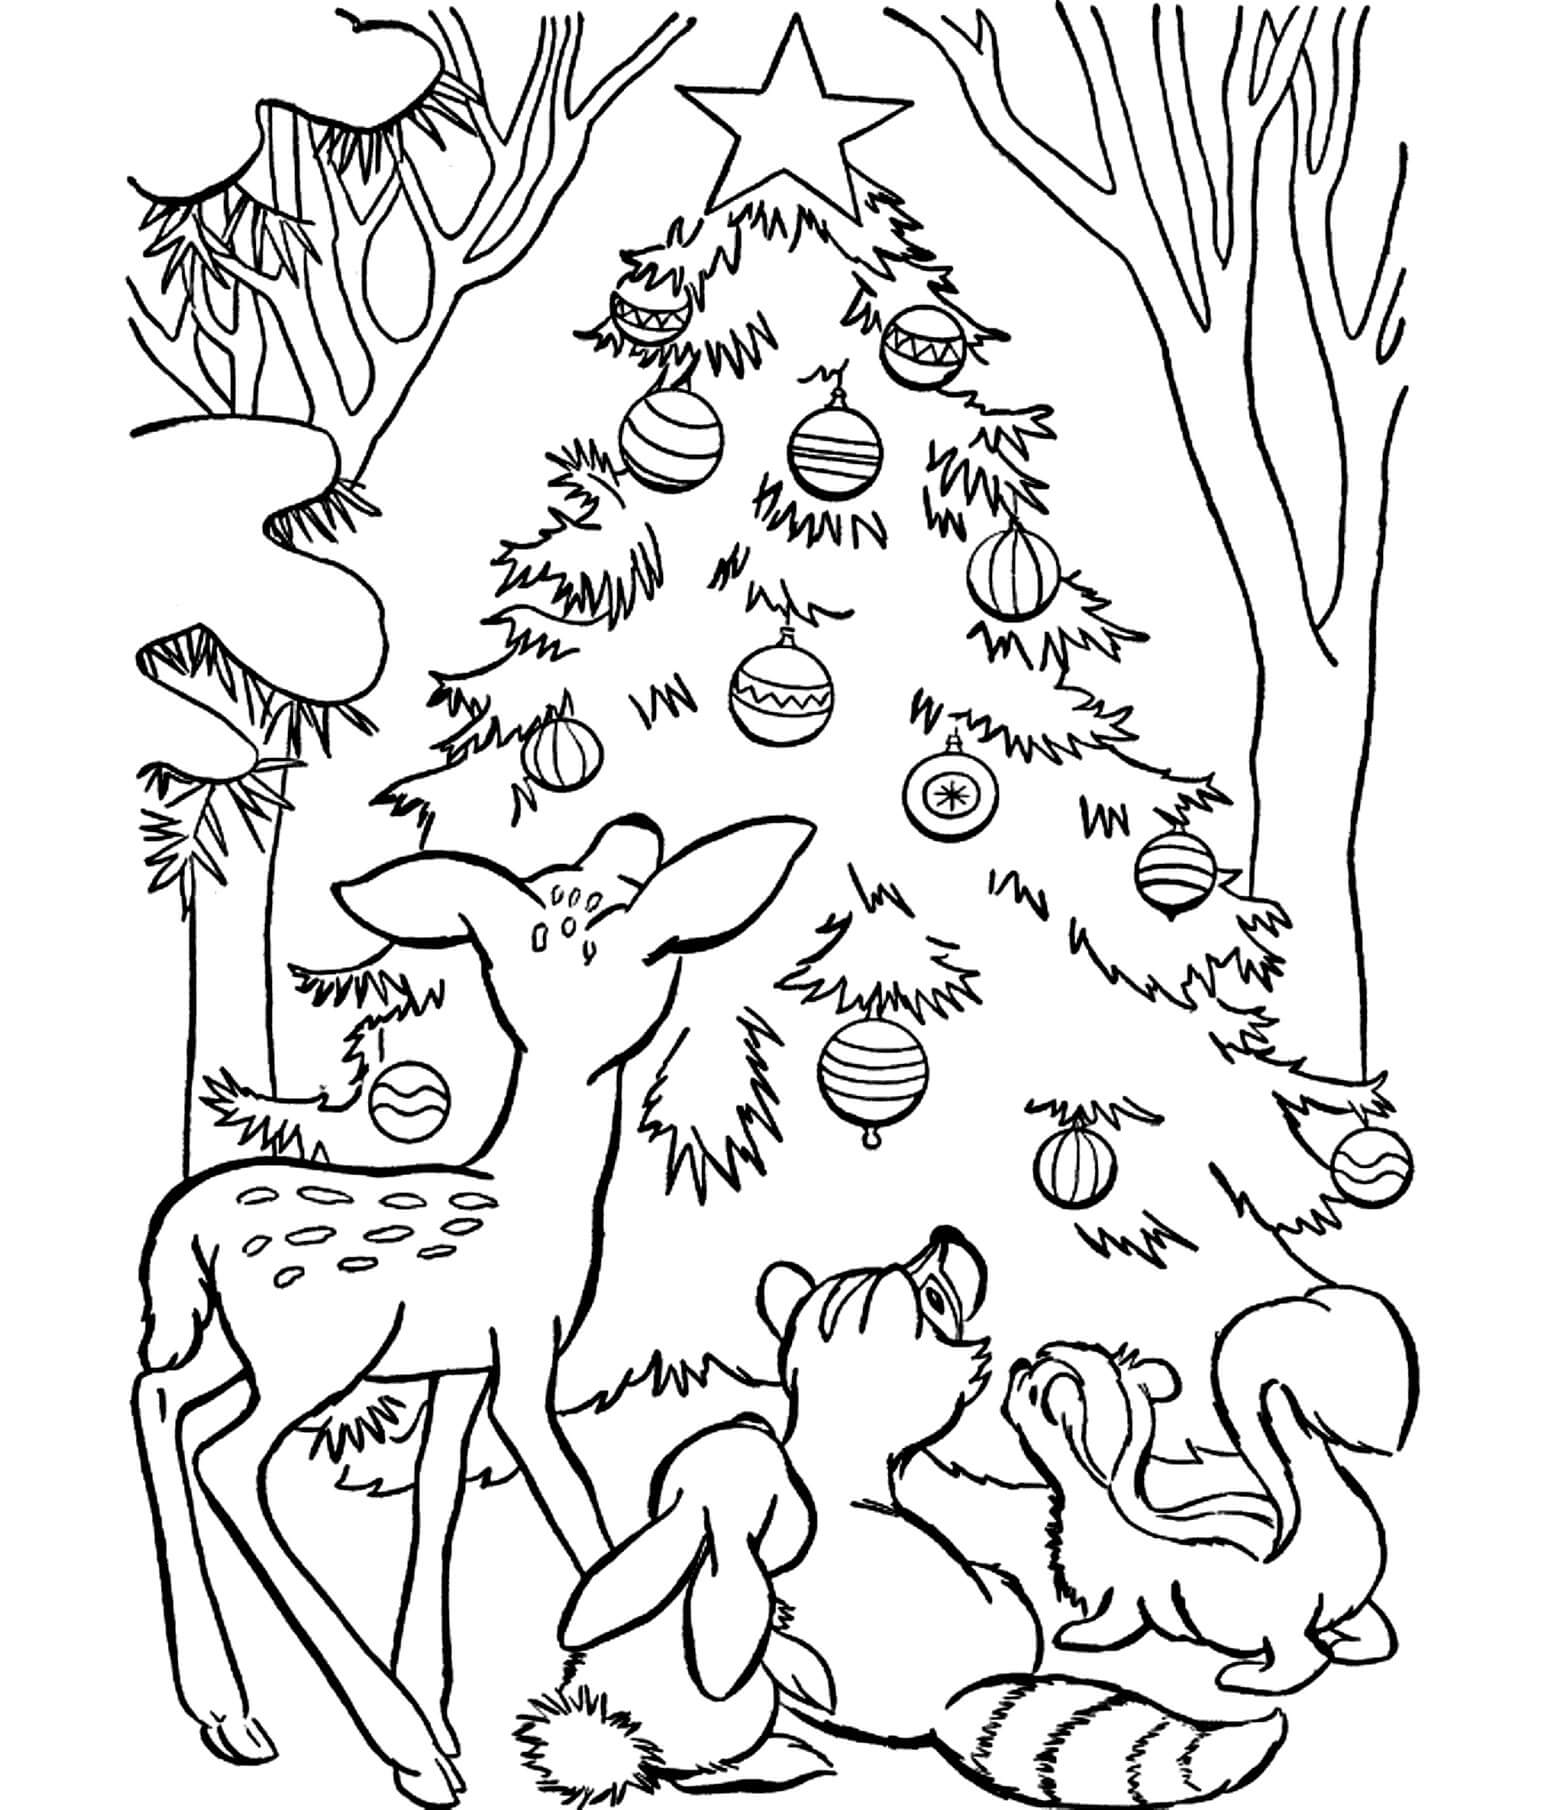 Раскраска Оленёнок Бэмби и его друзья возле ёлочки